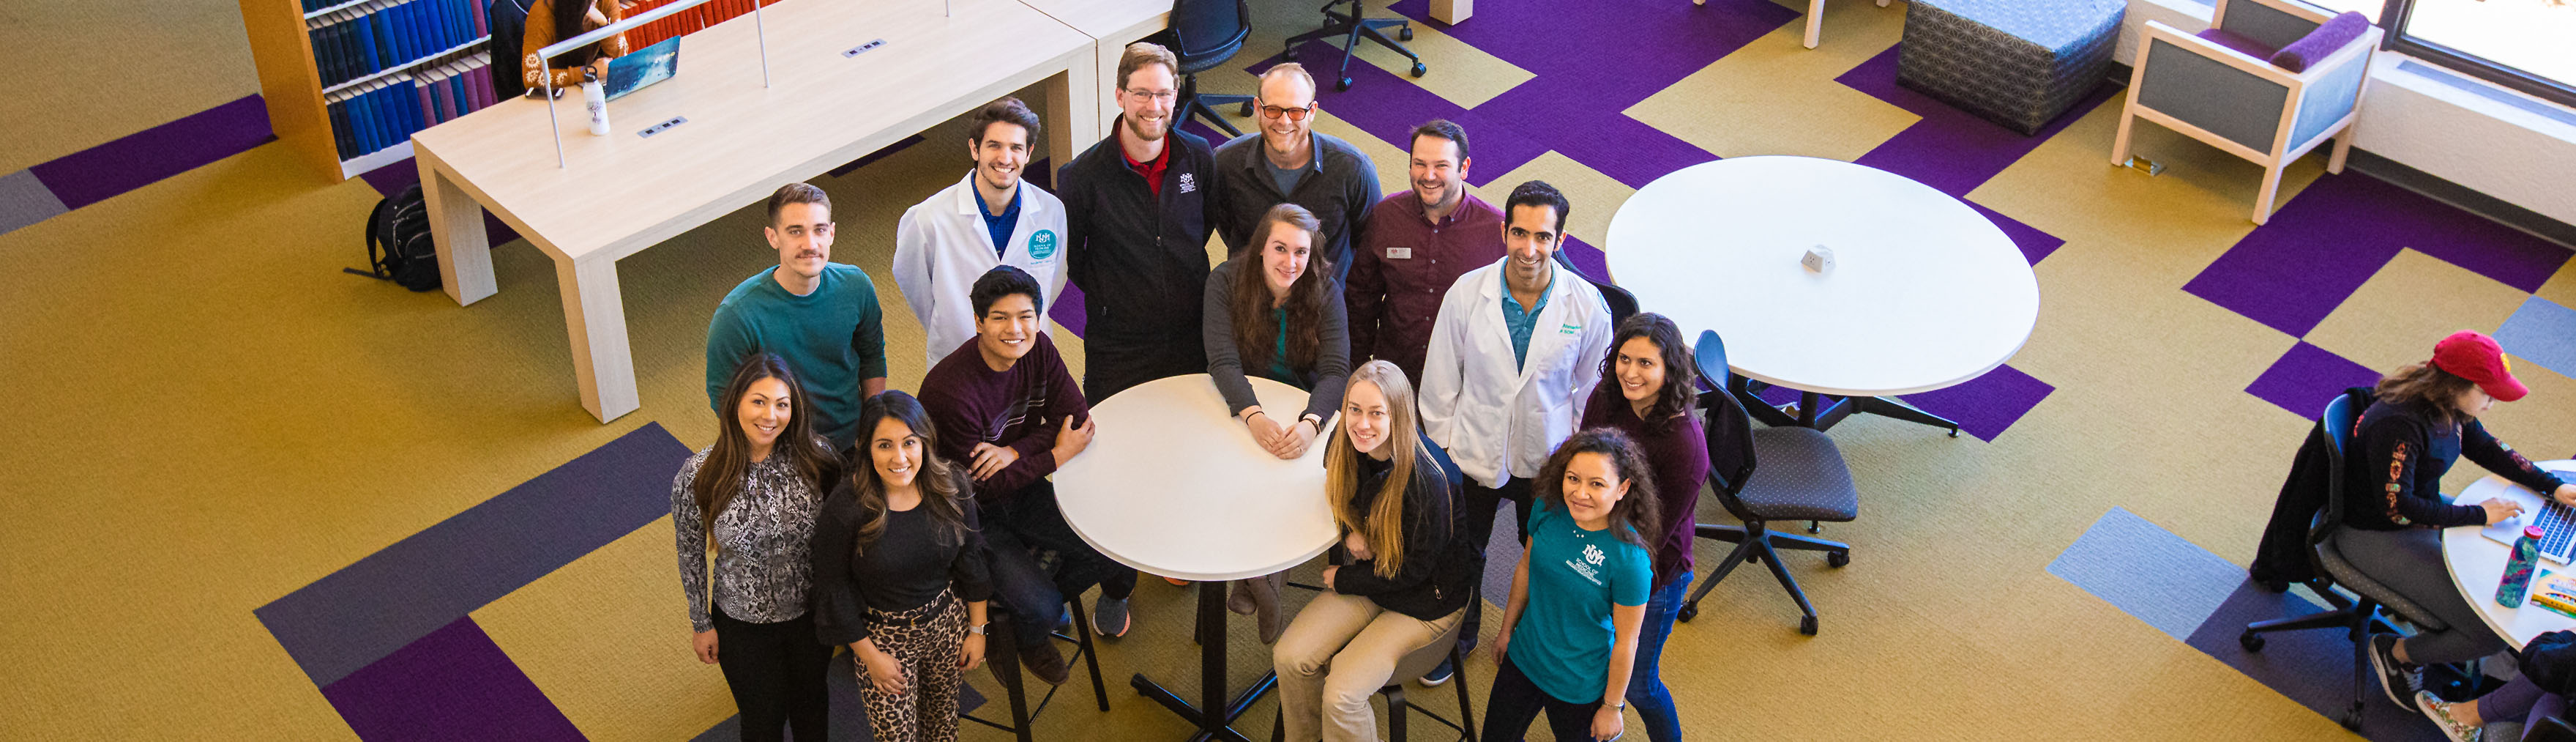 طلاب من العديد من البرامج التعليمية في كلية الطب بجامعة UNM يجتمعون لالتقاط صورة في مكتبة العلوم الصحية